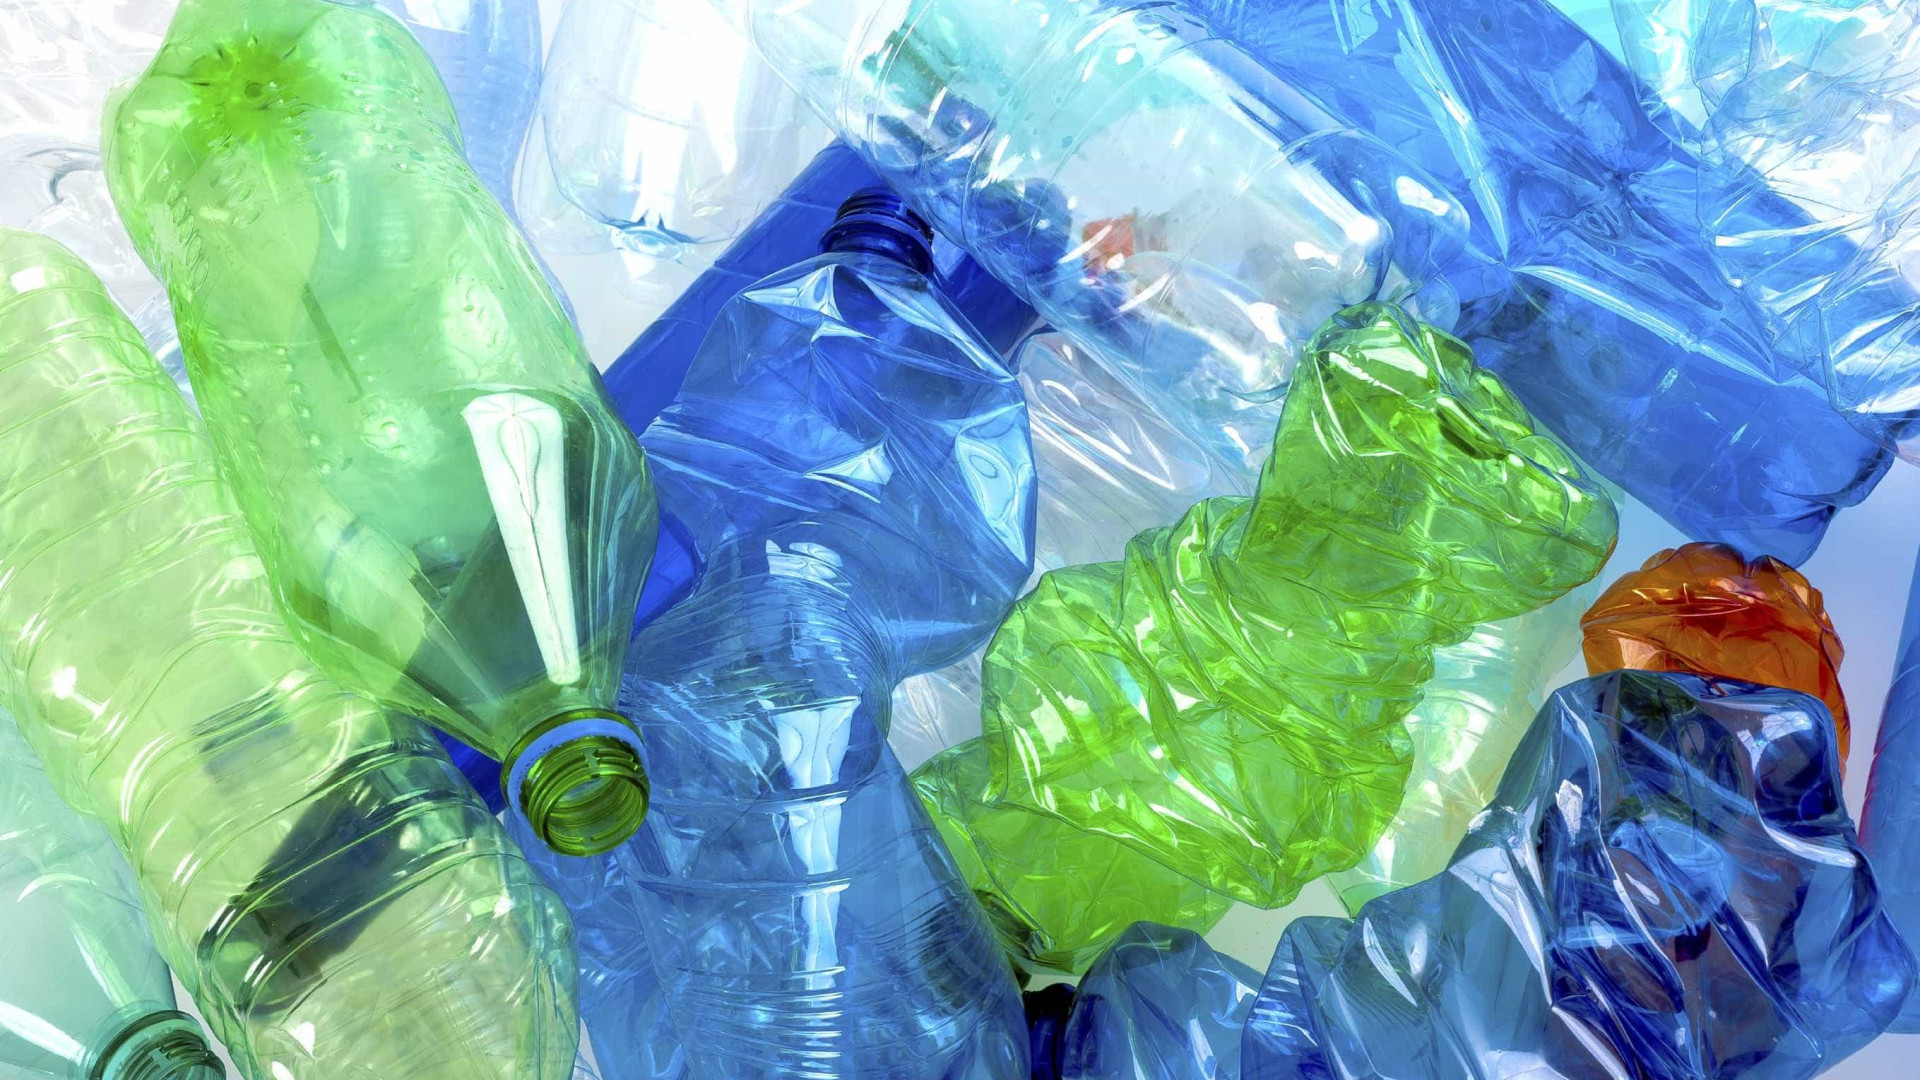 Plásticos também produzem gases com efeito de estufa